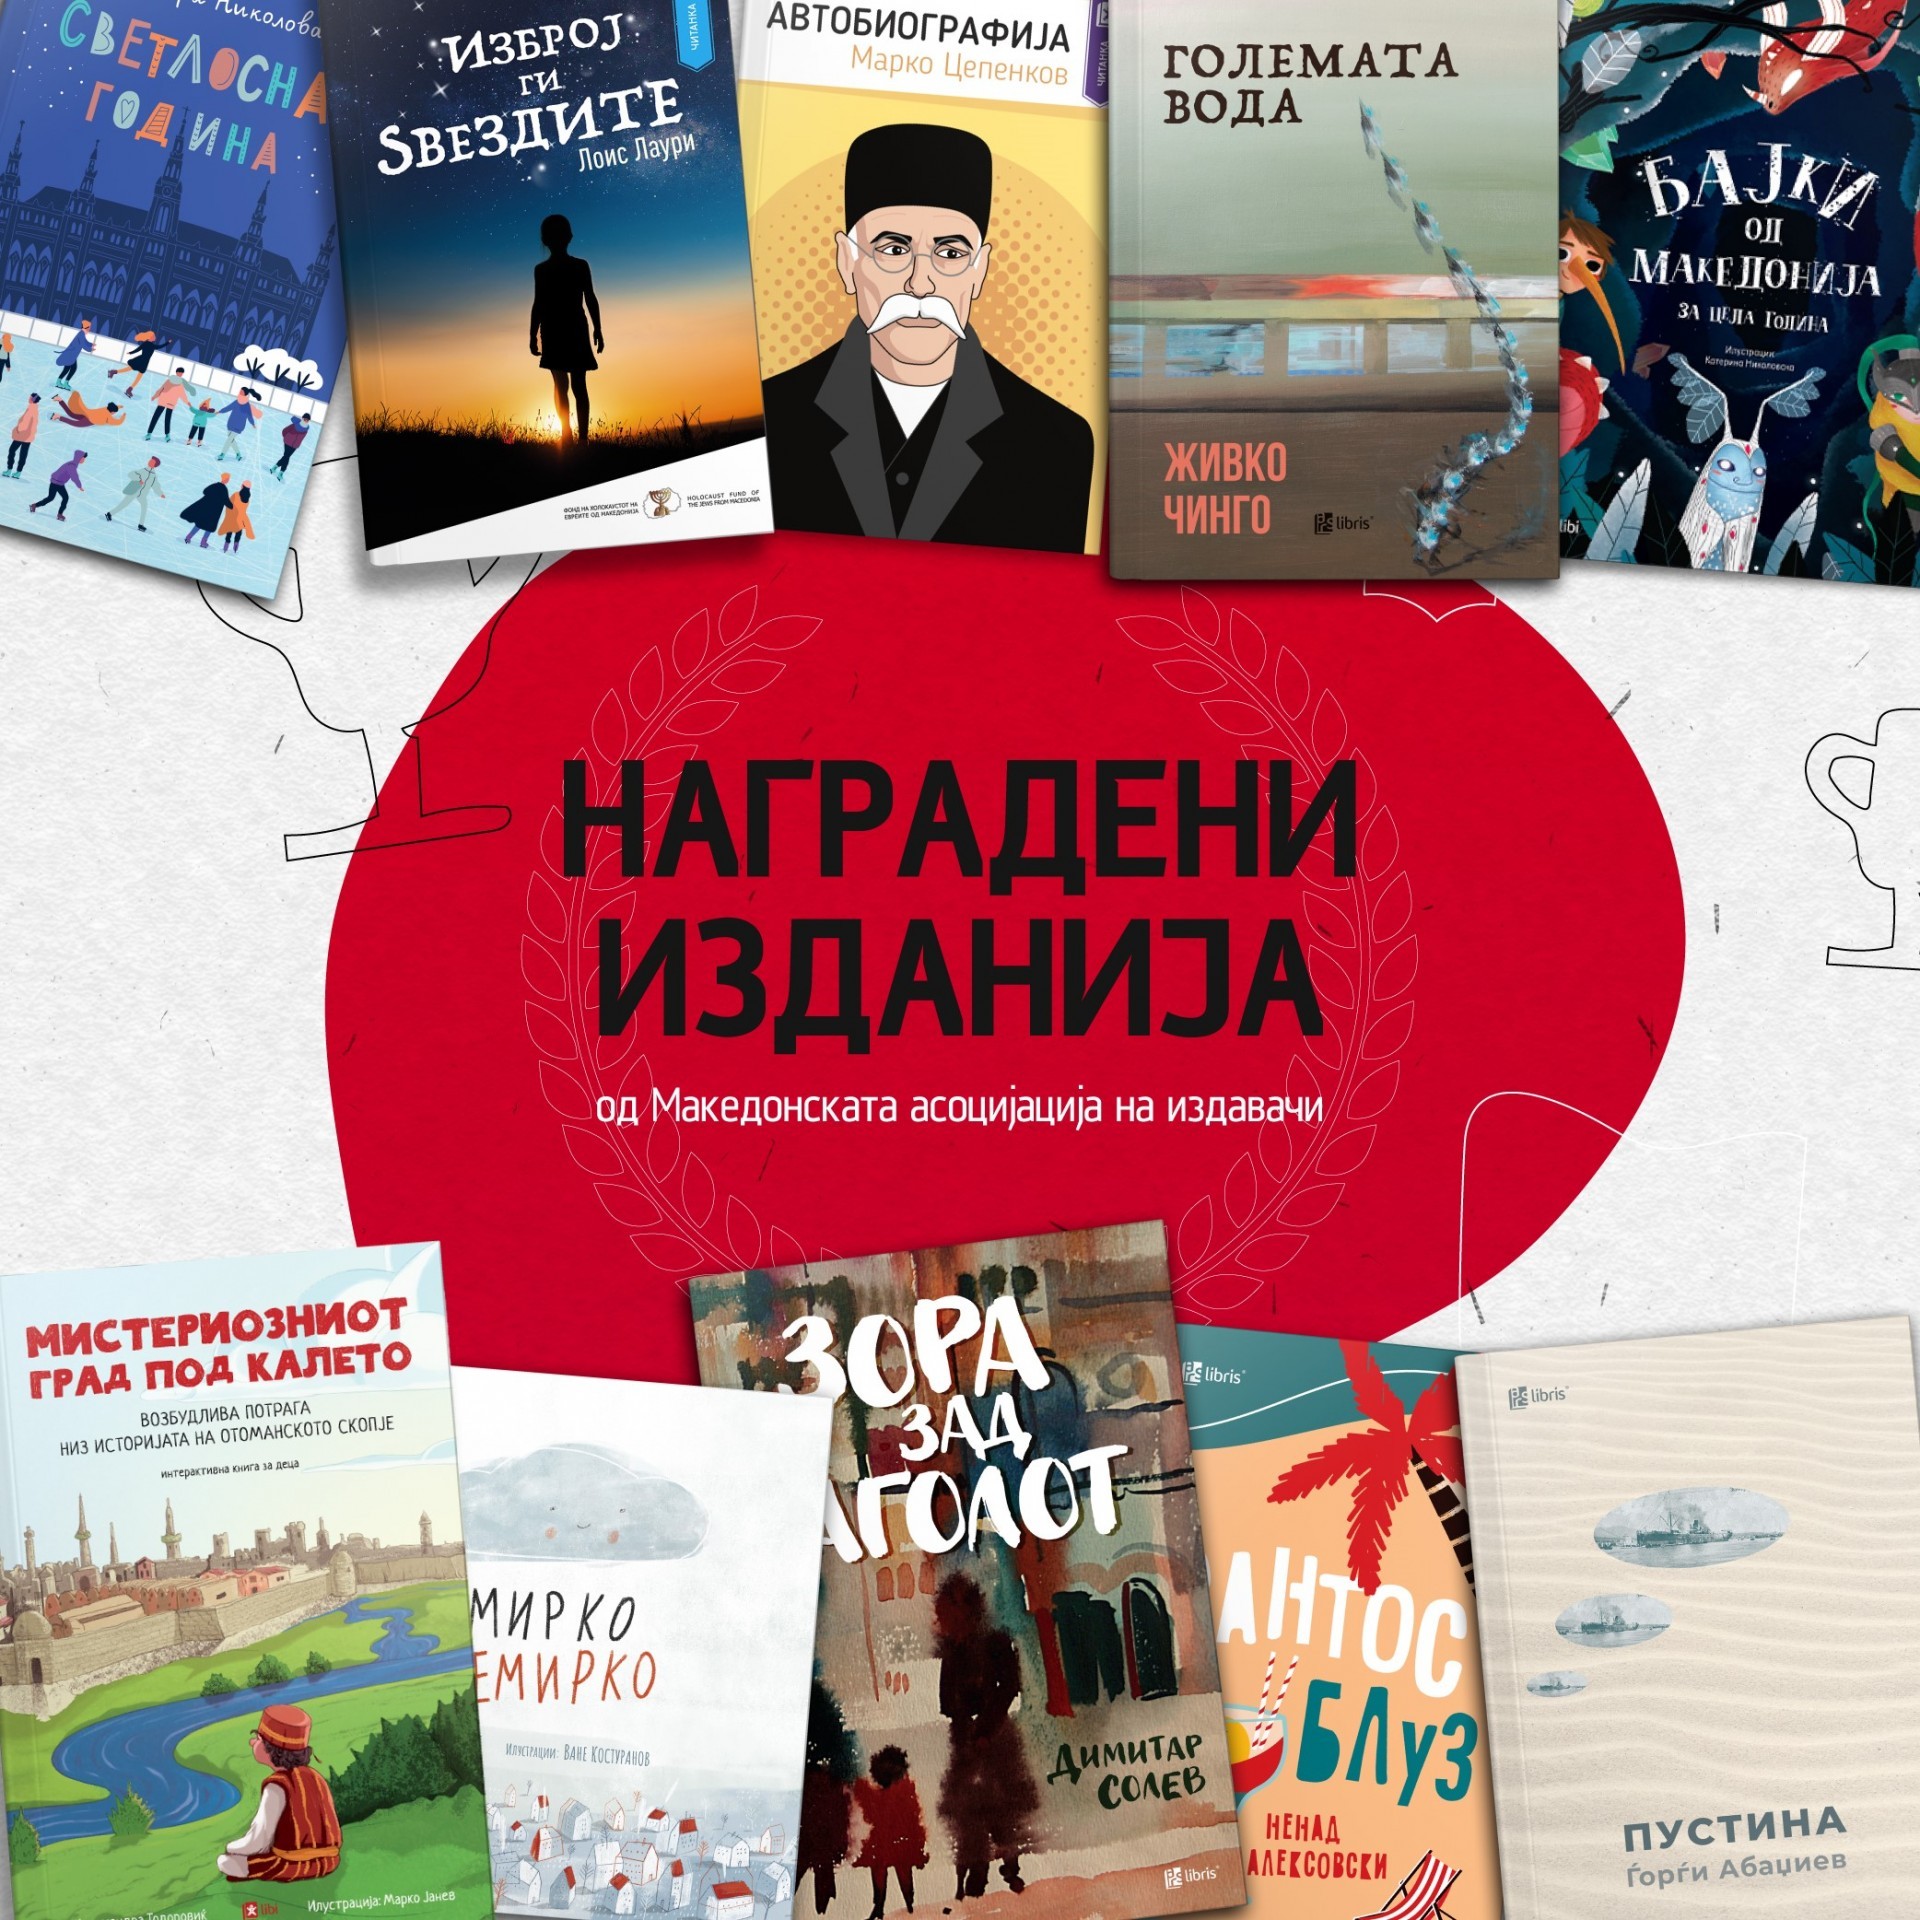 Издавачката куќа „Арс Ламина“ повторно со најмногу награди од Македонската асоцијација на издавачи